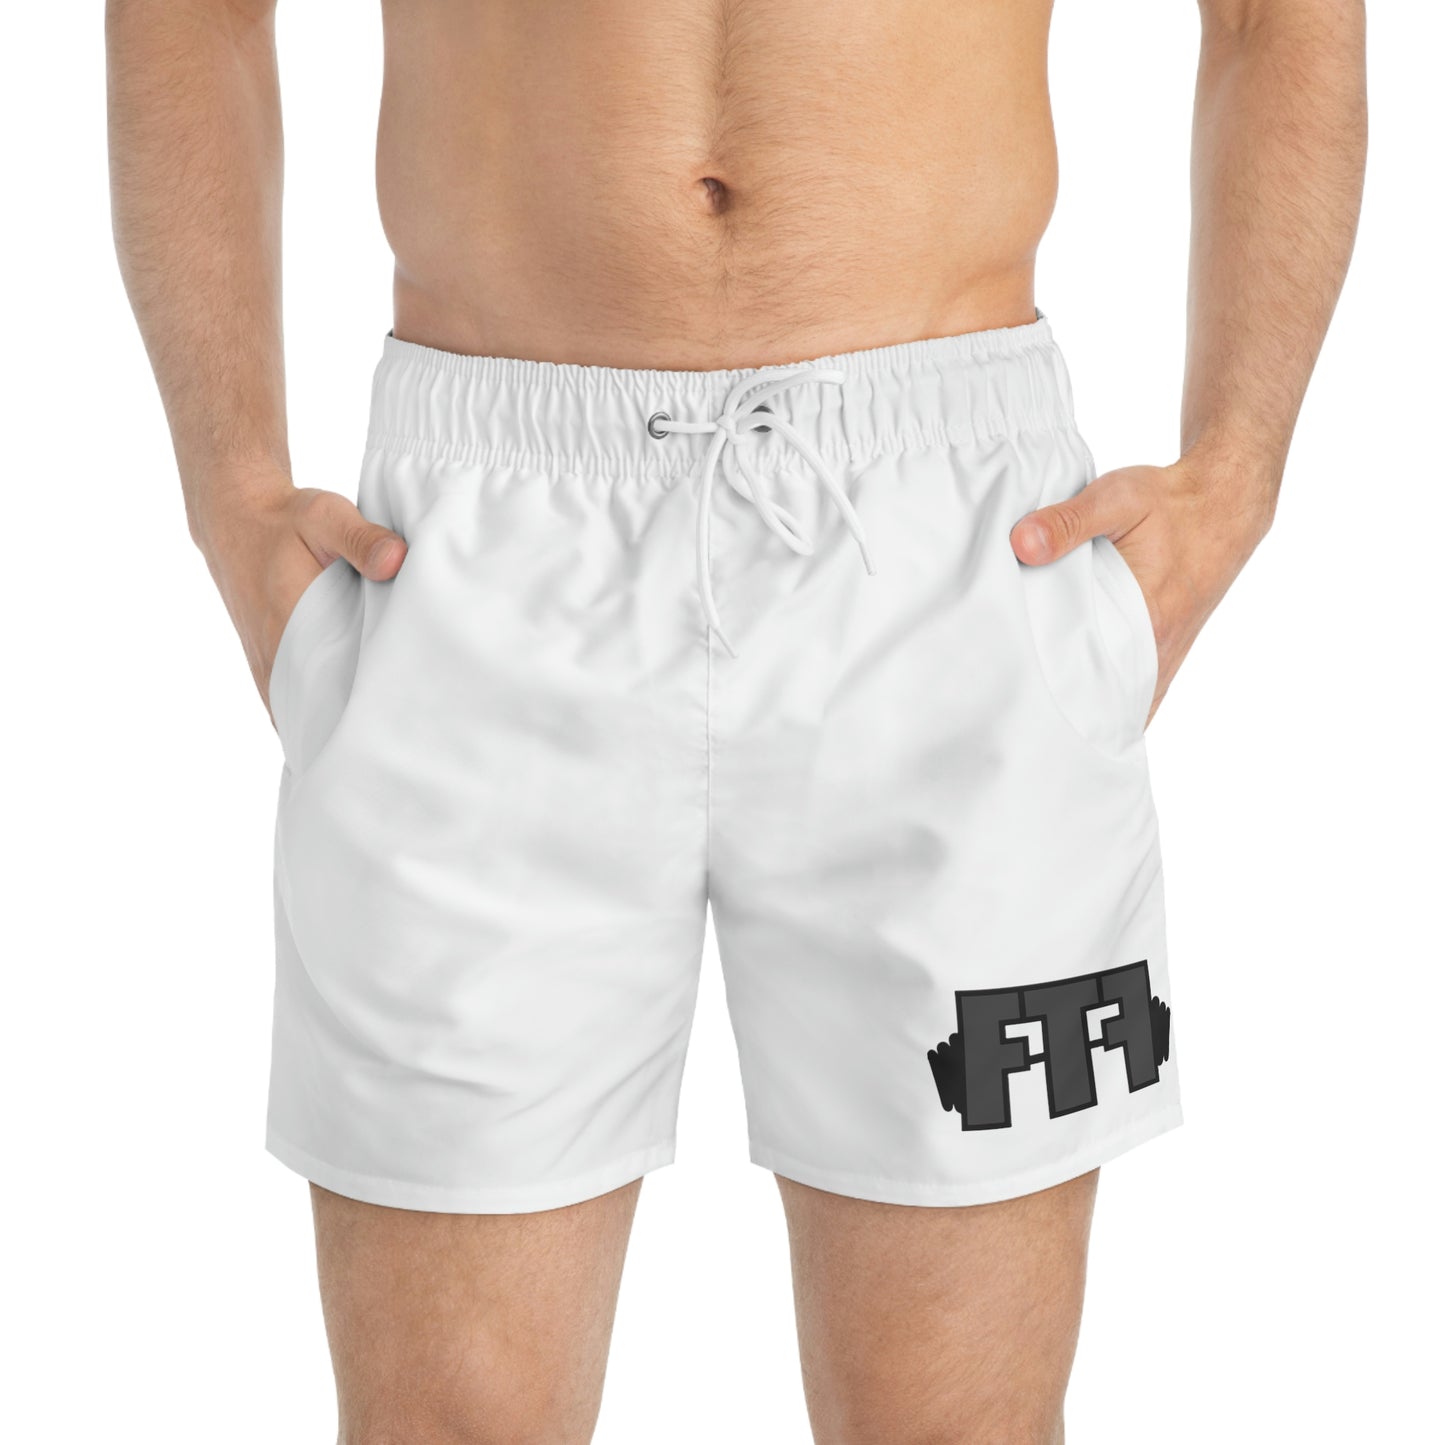 FTF Shorts Grey Logo